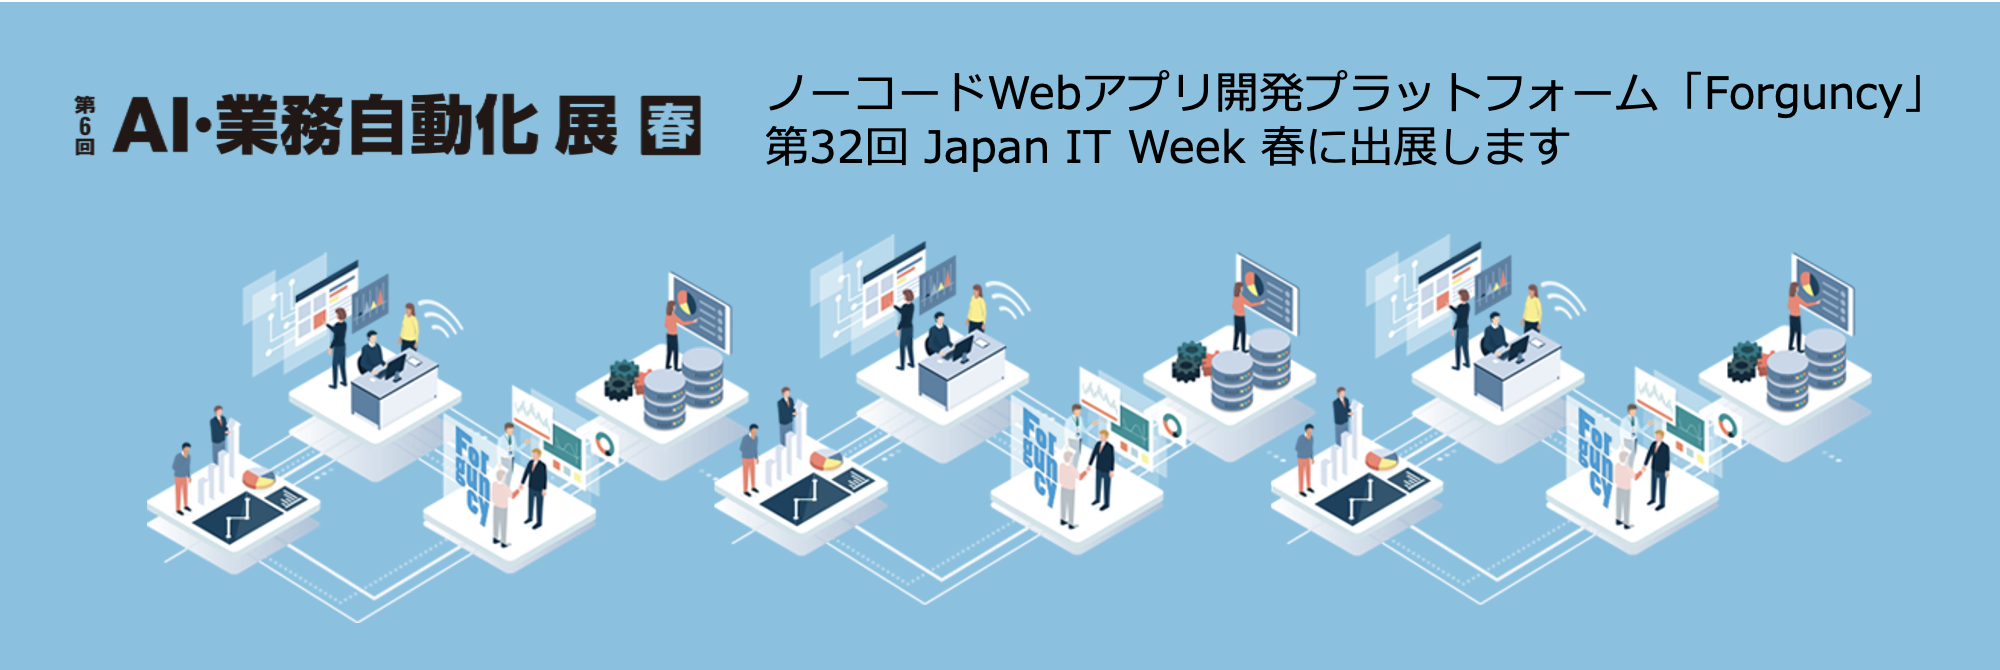 「第32回 Japan IT Week 春」